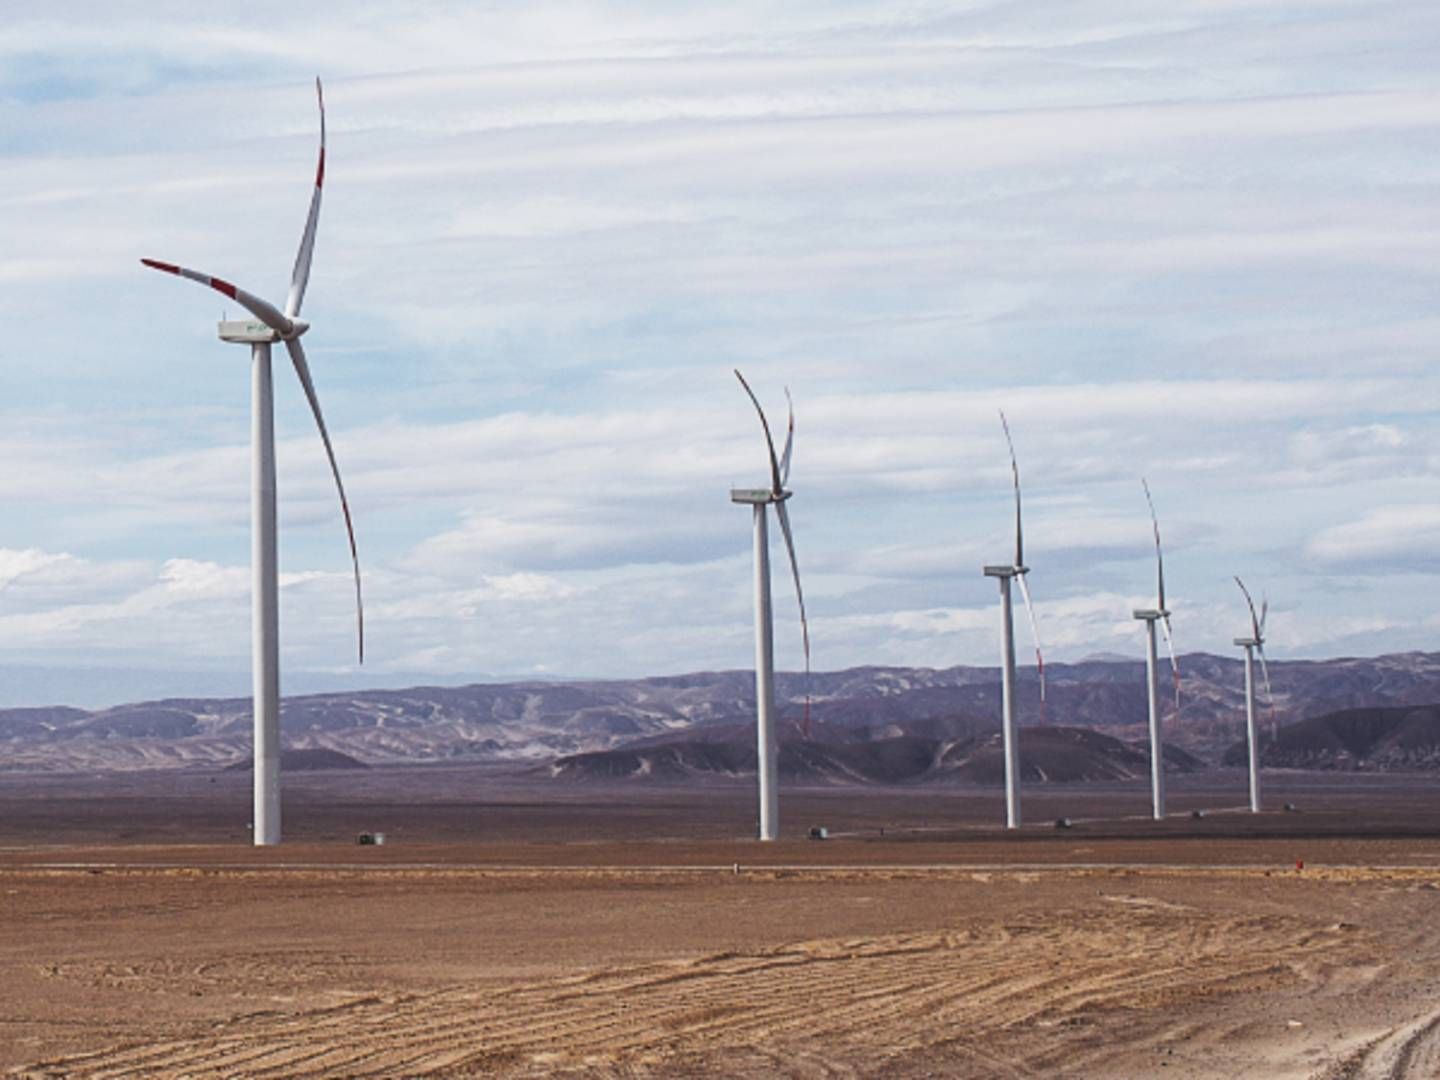 Enels vindmøller i nabolandet Peru. | Foto: Enel